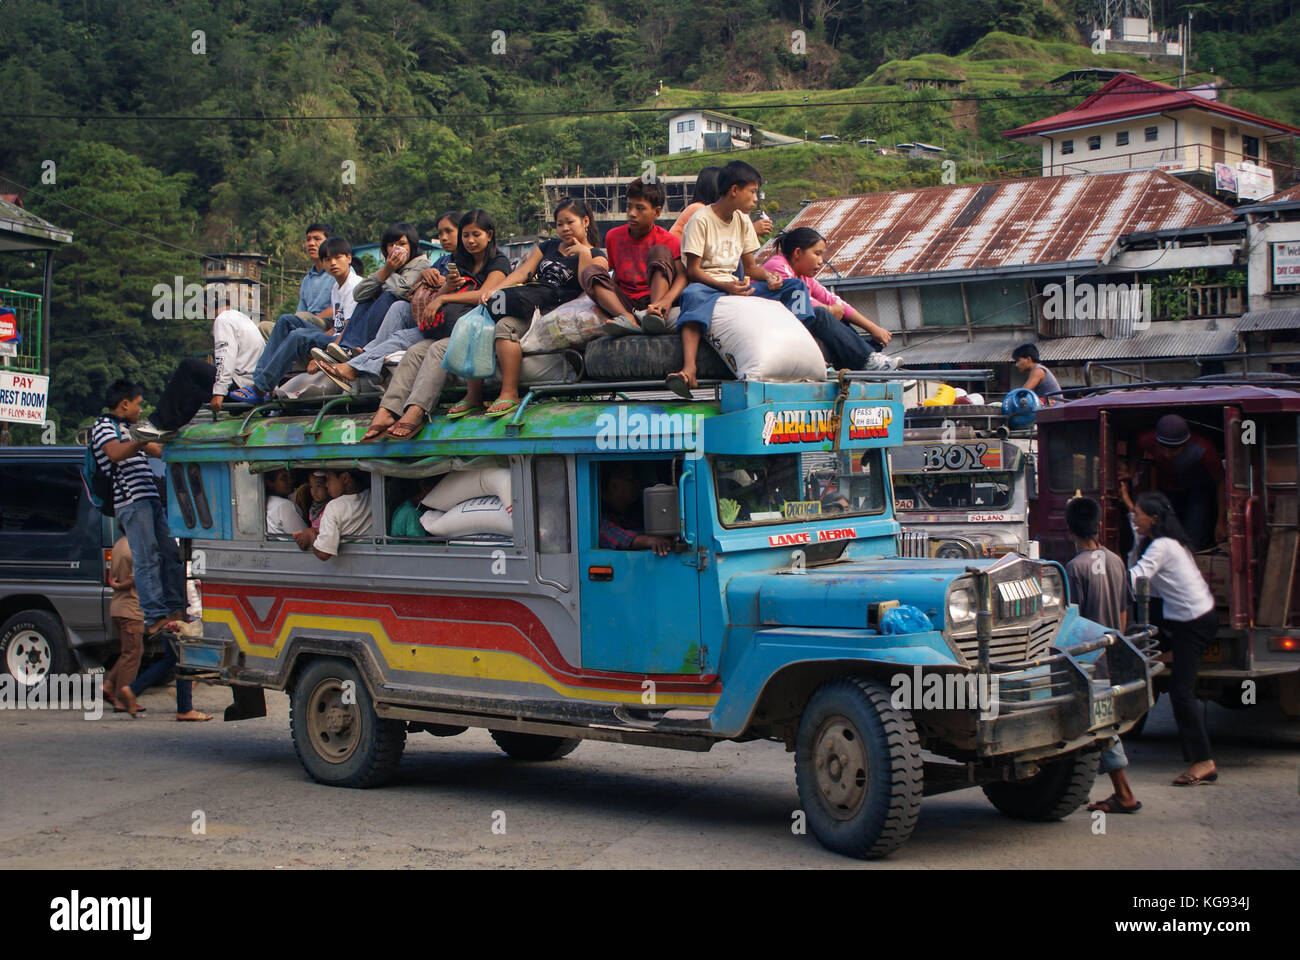 Banaue, Philippinen - 17. Juni 2009: Typische jeepney überlastet mit Passagieren in der Nähe von banaue, North Luzon, Philippinen. Jeepneys sind sowohl günstige öffentliche Stockfoto